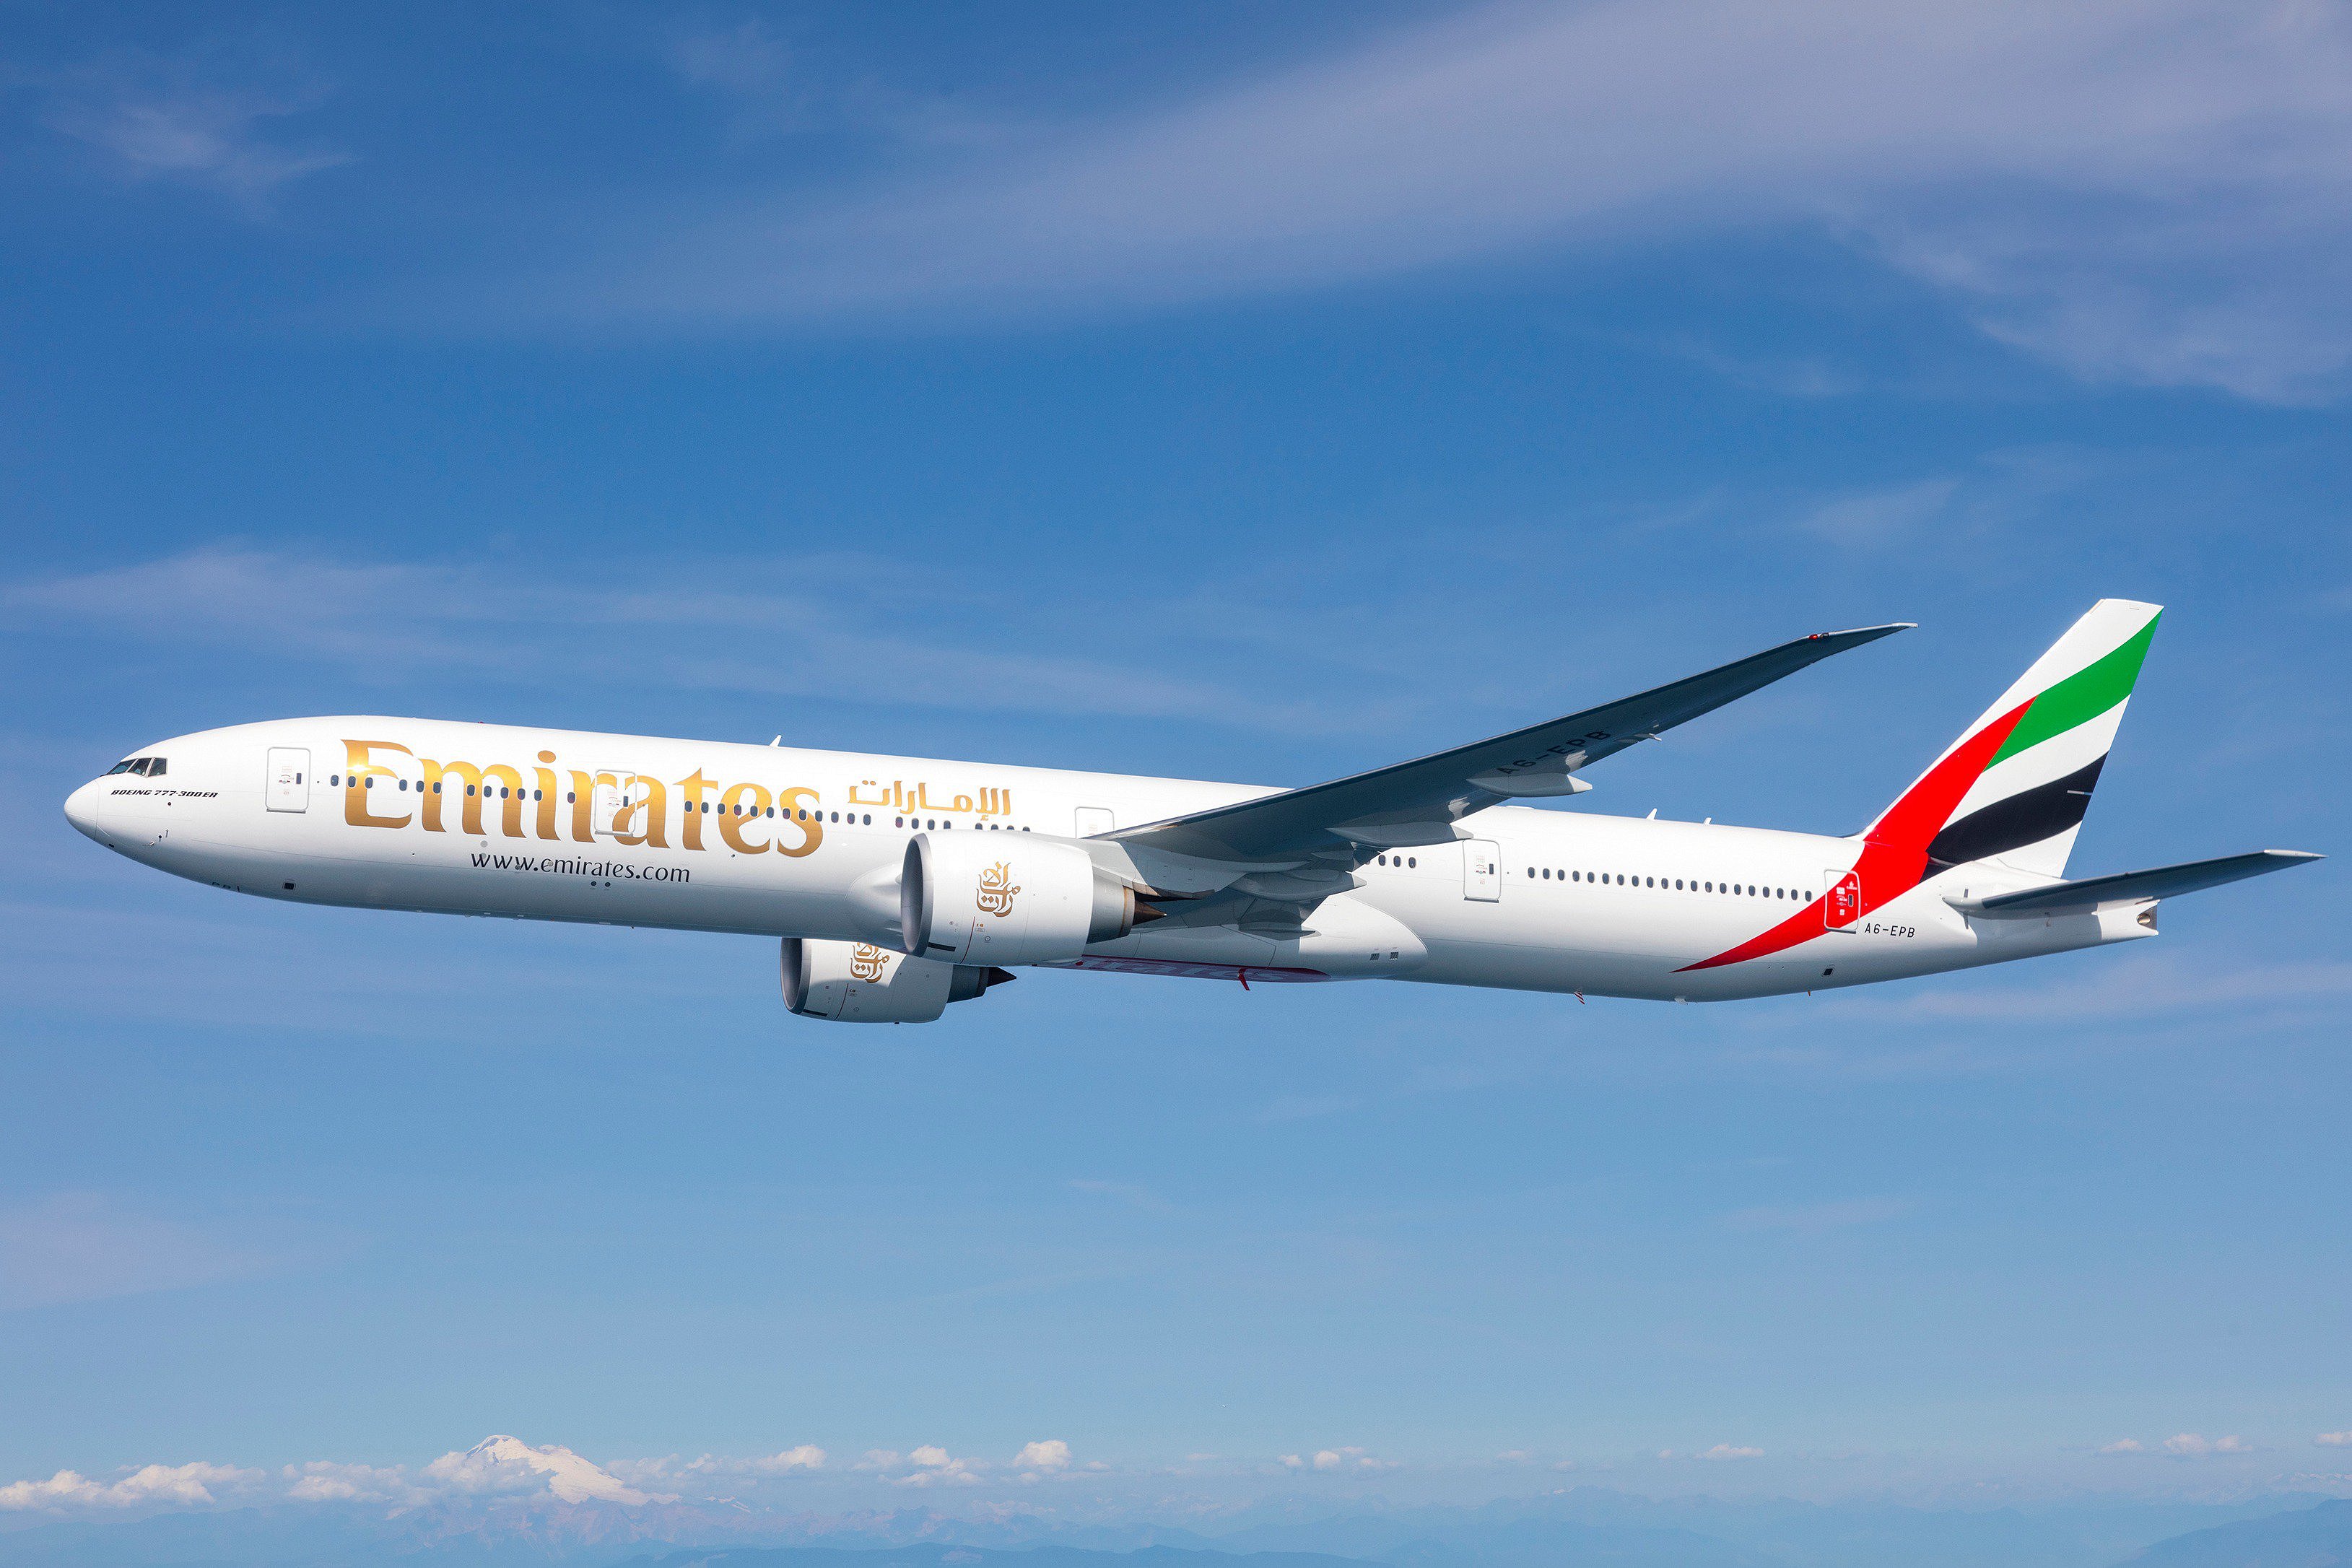 Аир лайн. Авиакомпания Дубай Эмирейтс. Боинг 777 арабские эмираты. А 330neo Emirates. Дубайская авиакомпания Emirates.